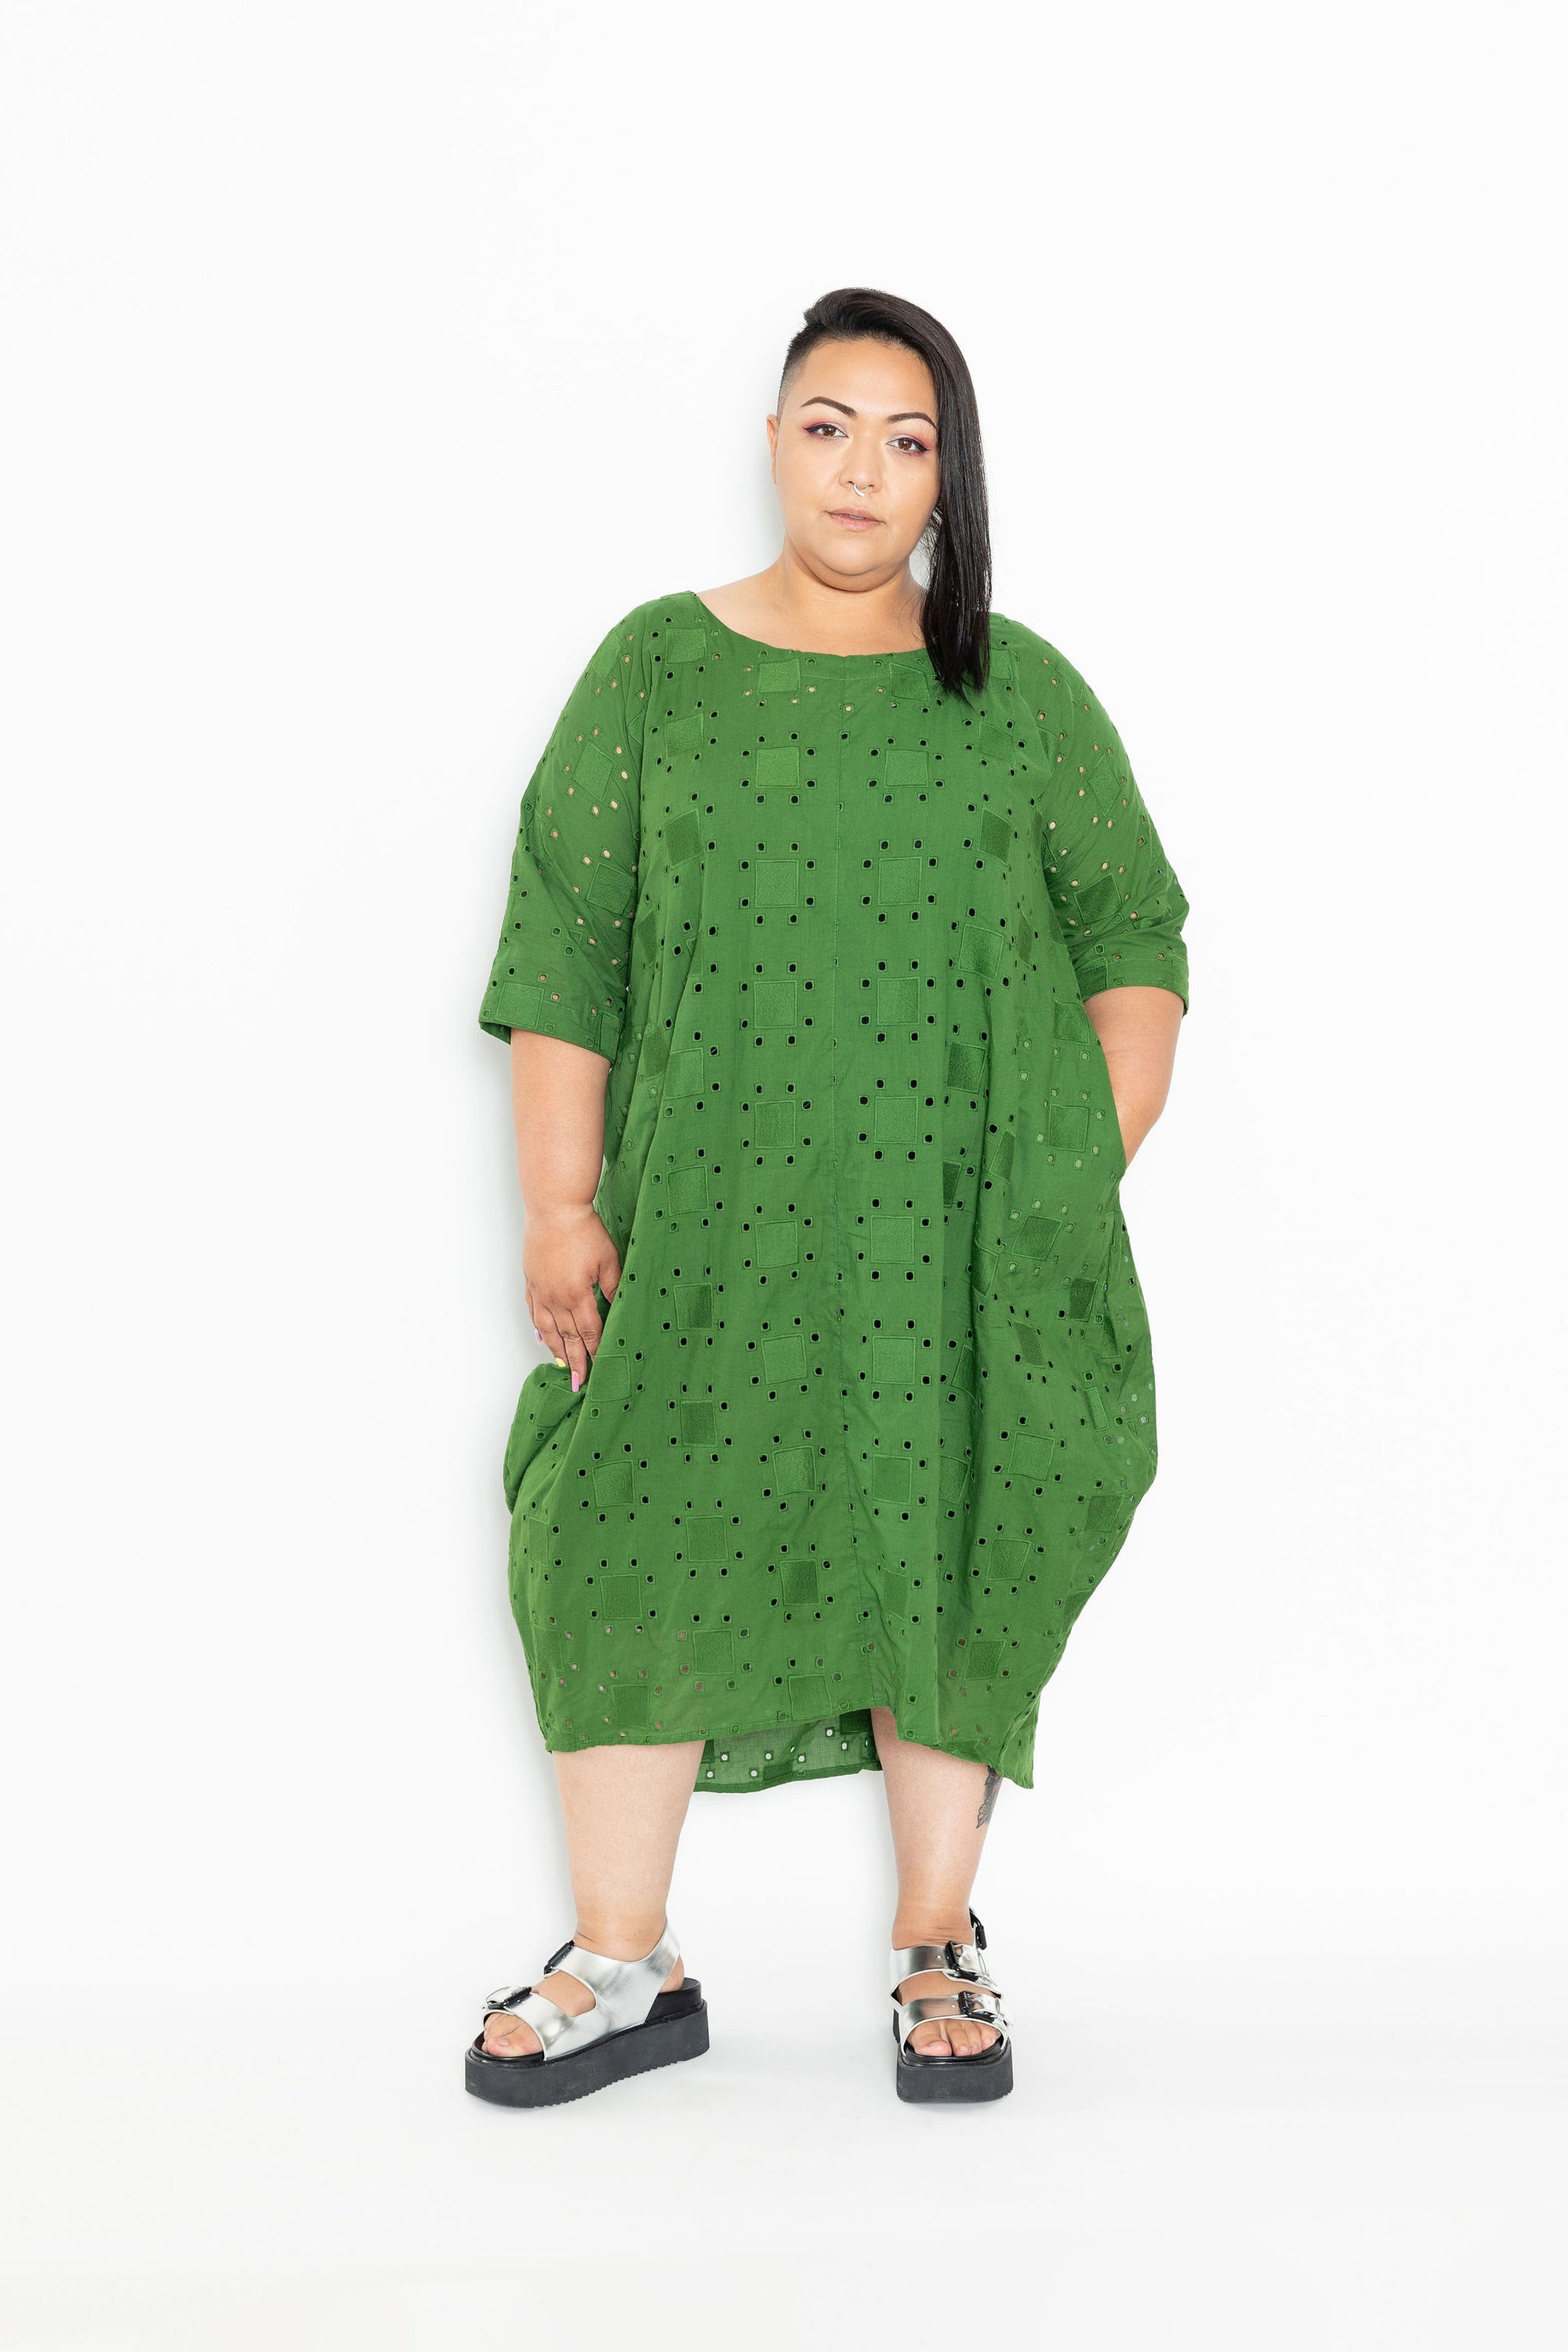 Outlet - last One Size M - Sam Dress! - Leaf Green